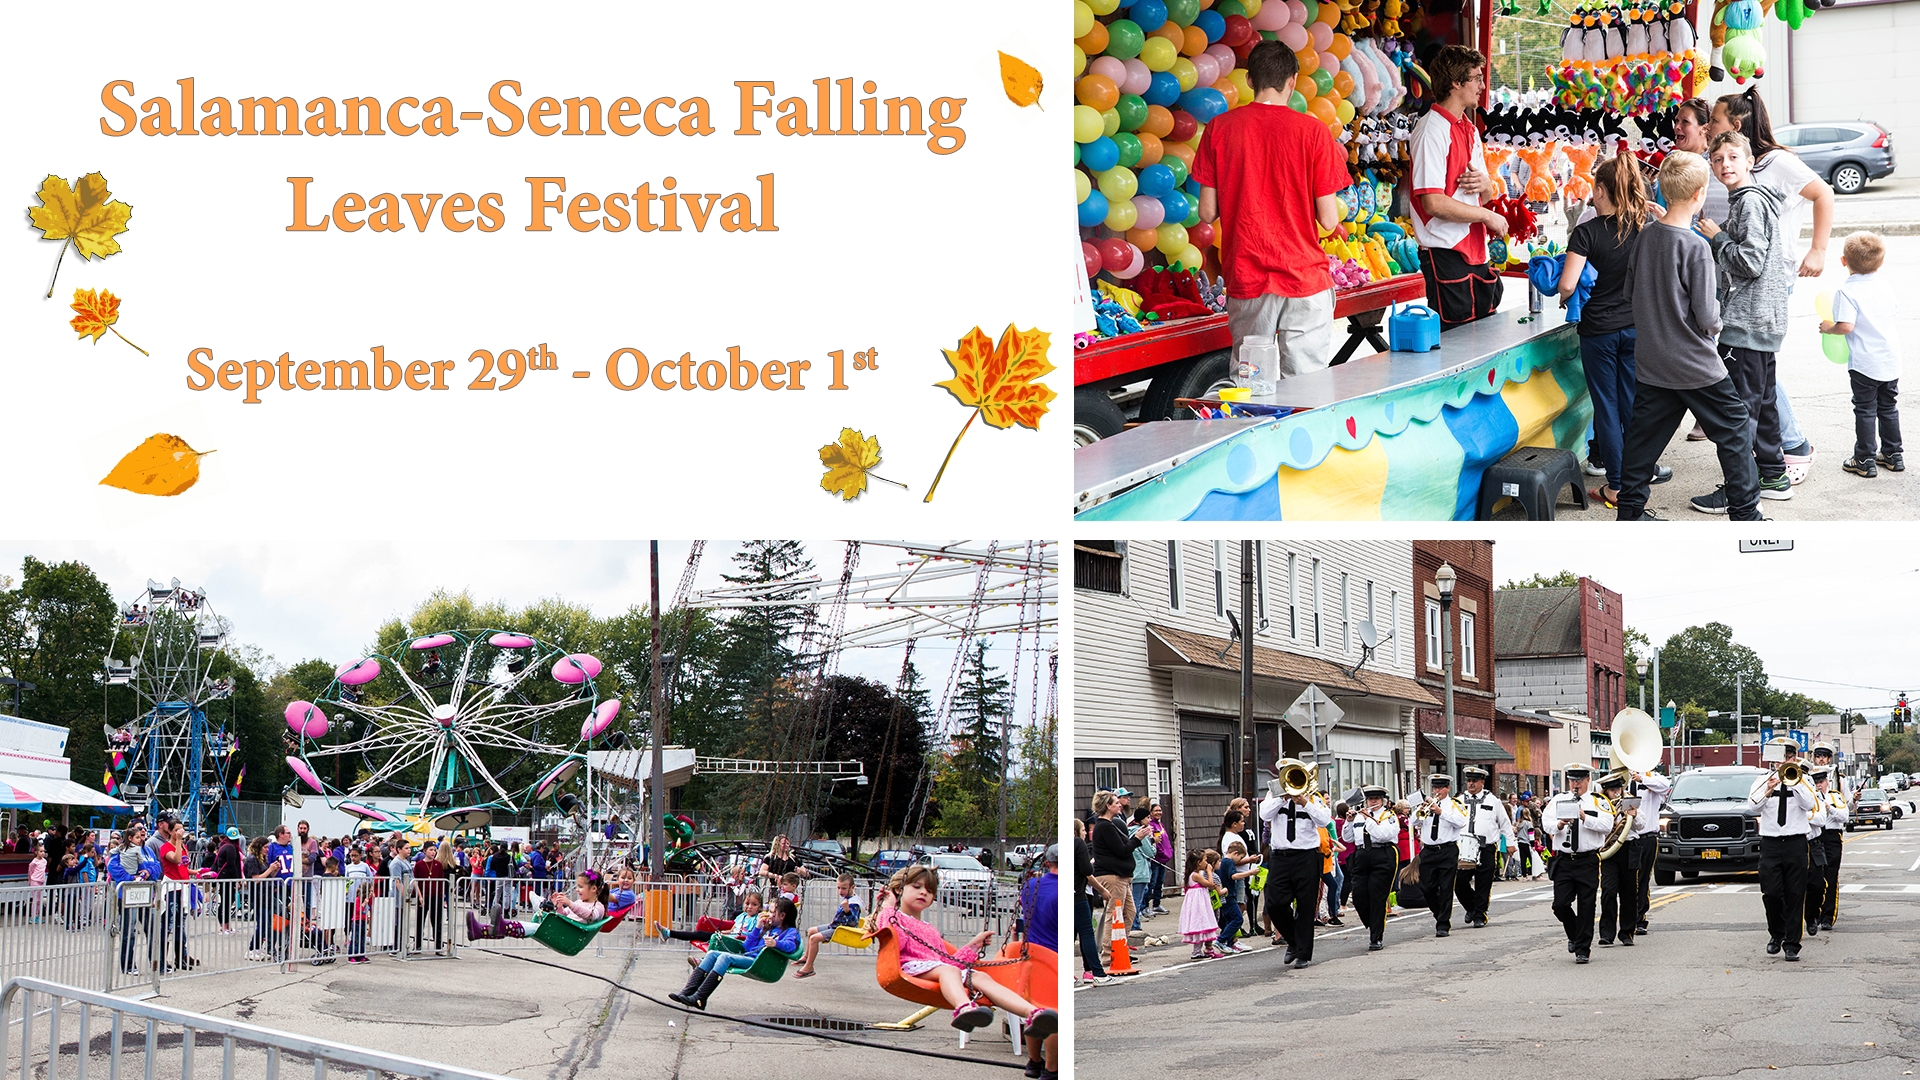 Salamanca-Seneca Falling Leaves Festival